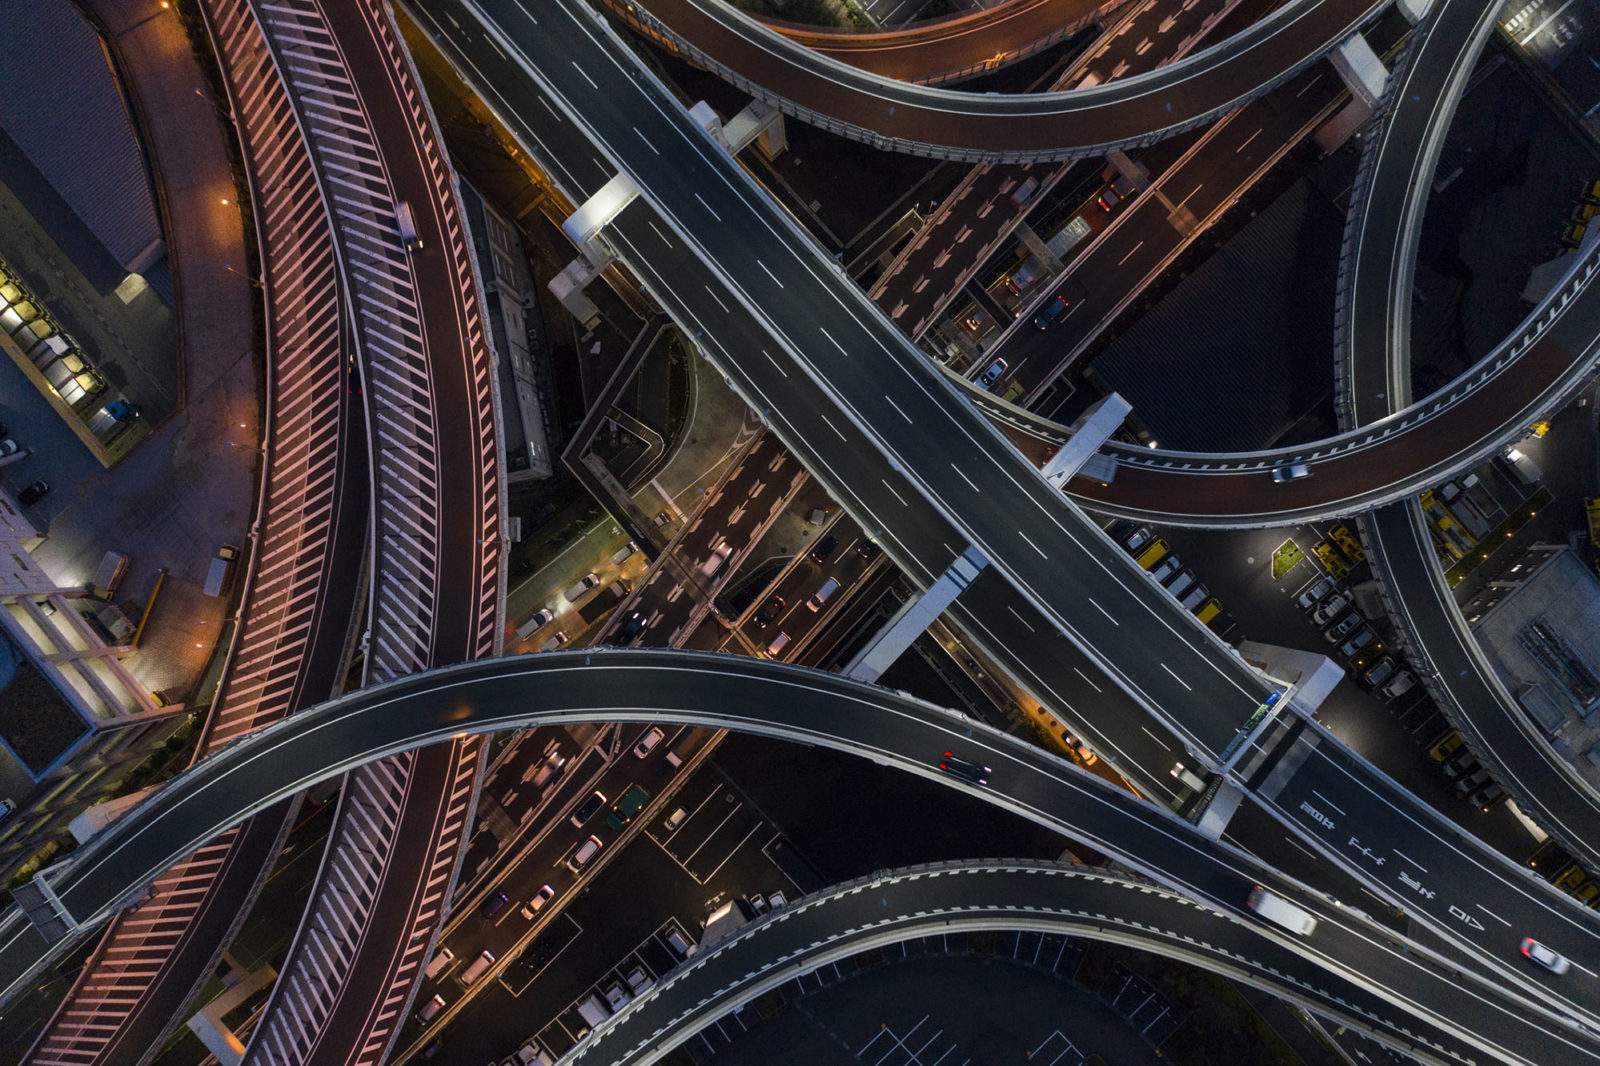 Nachtfoto van gecompliceerde kruisende snelweg.